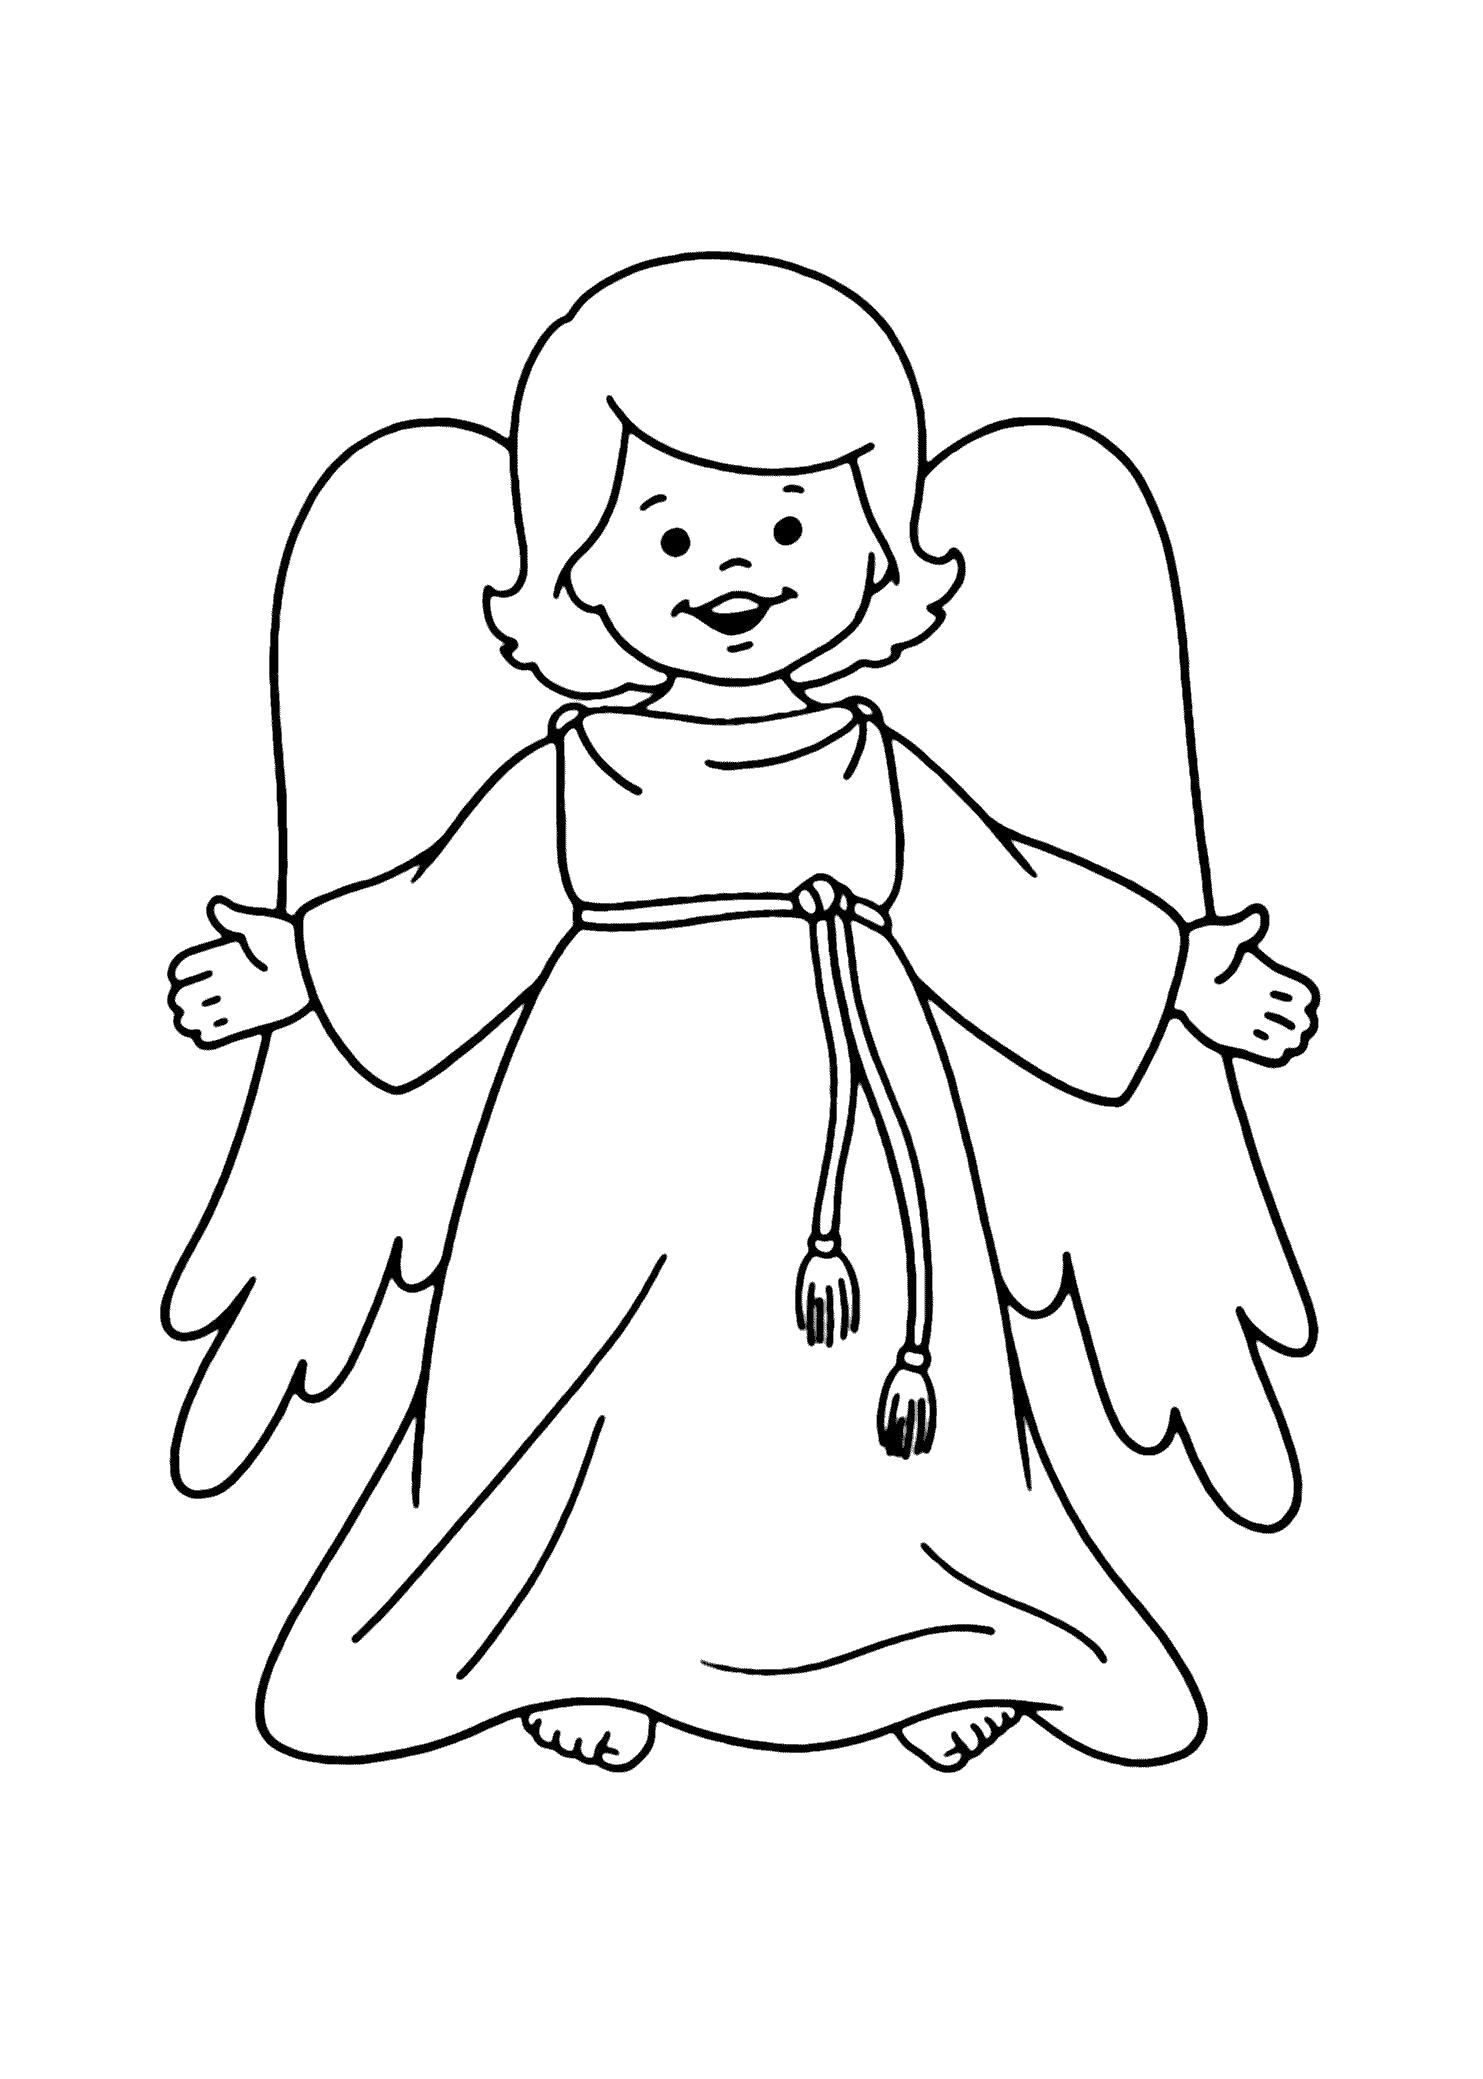 Название: Раскраска Раскраска для детей Ангел. Категория: мифические существа. Теги: ангел.